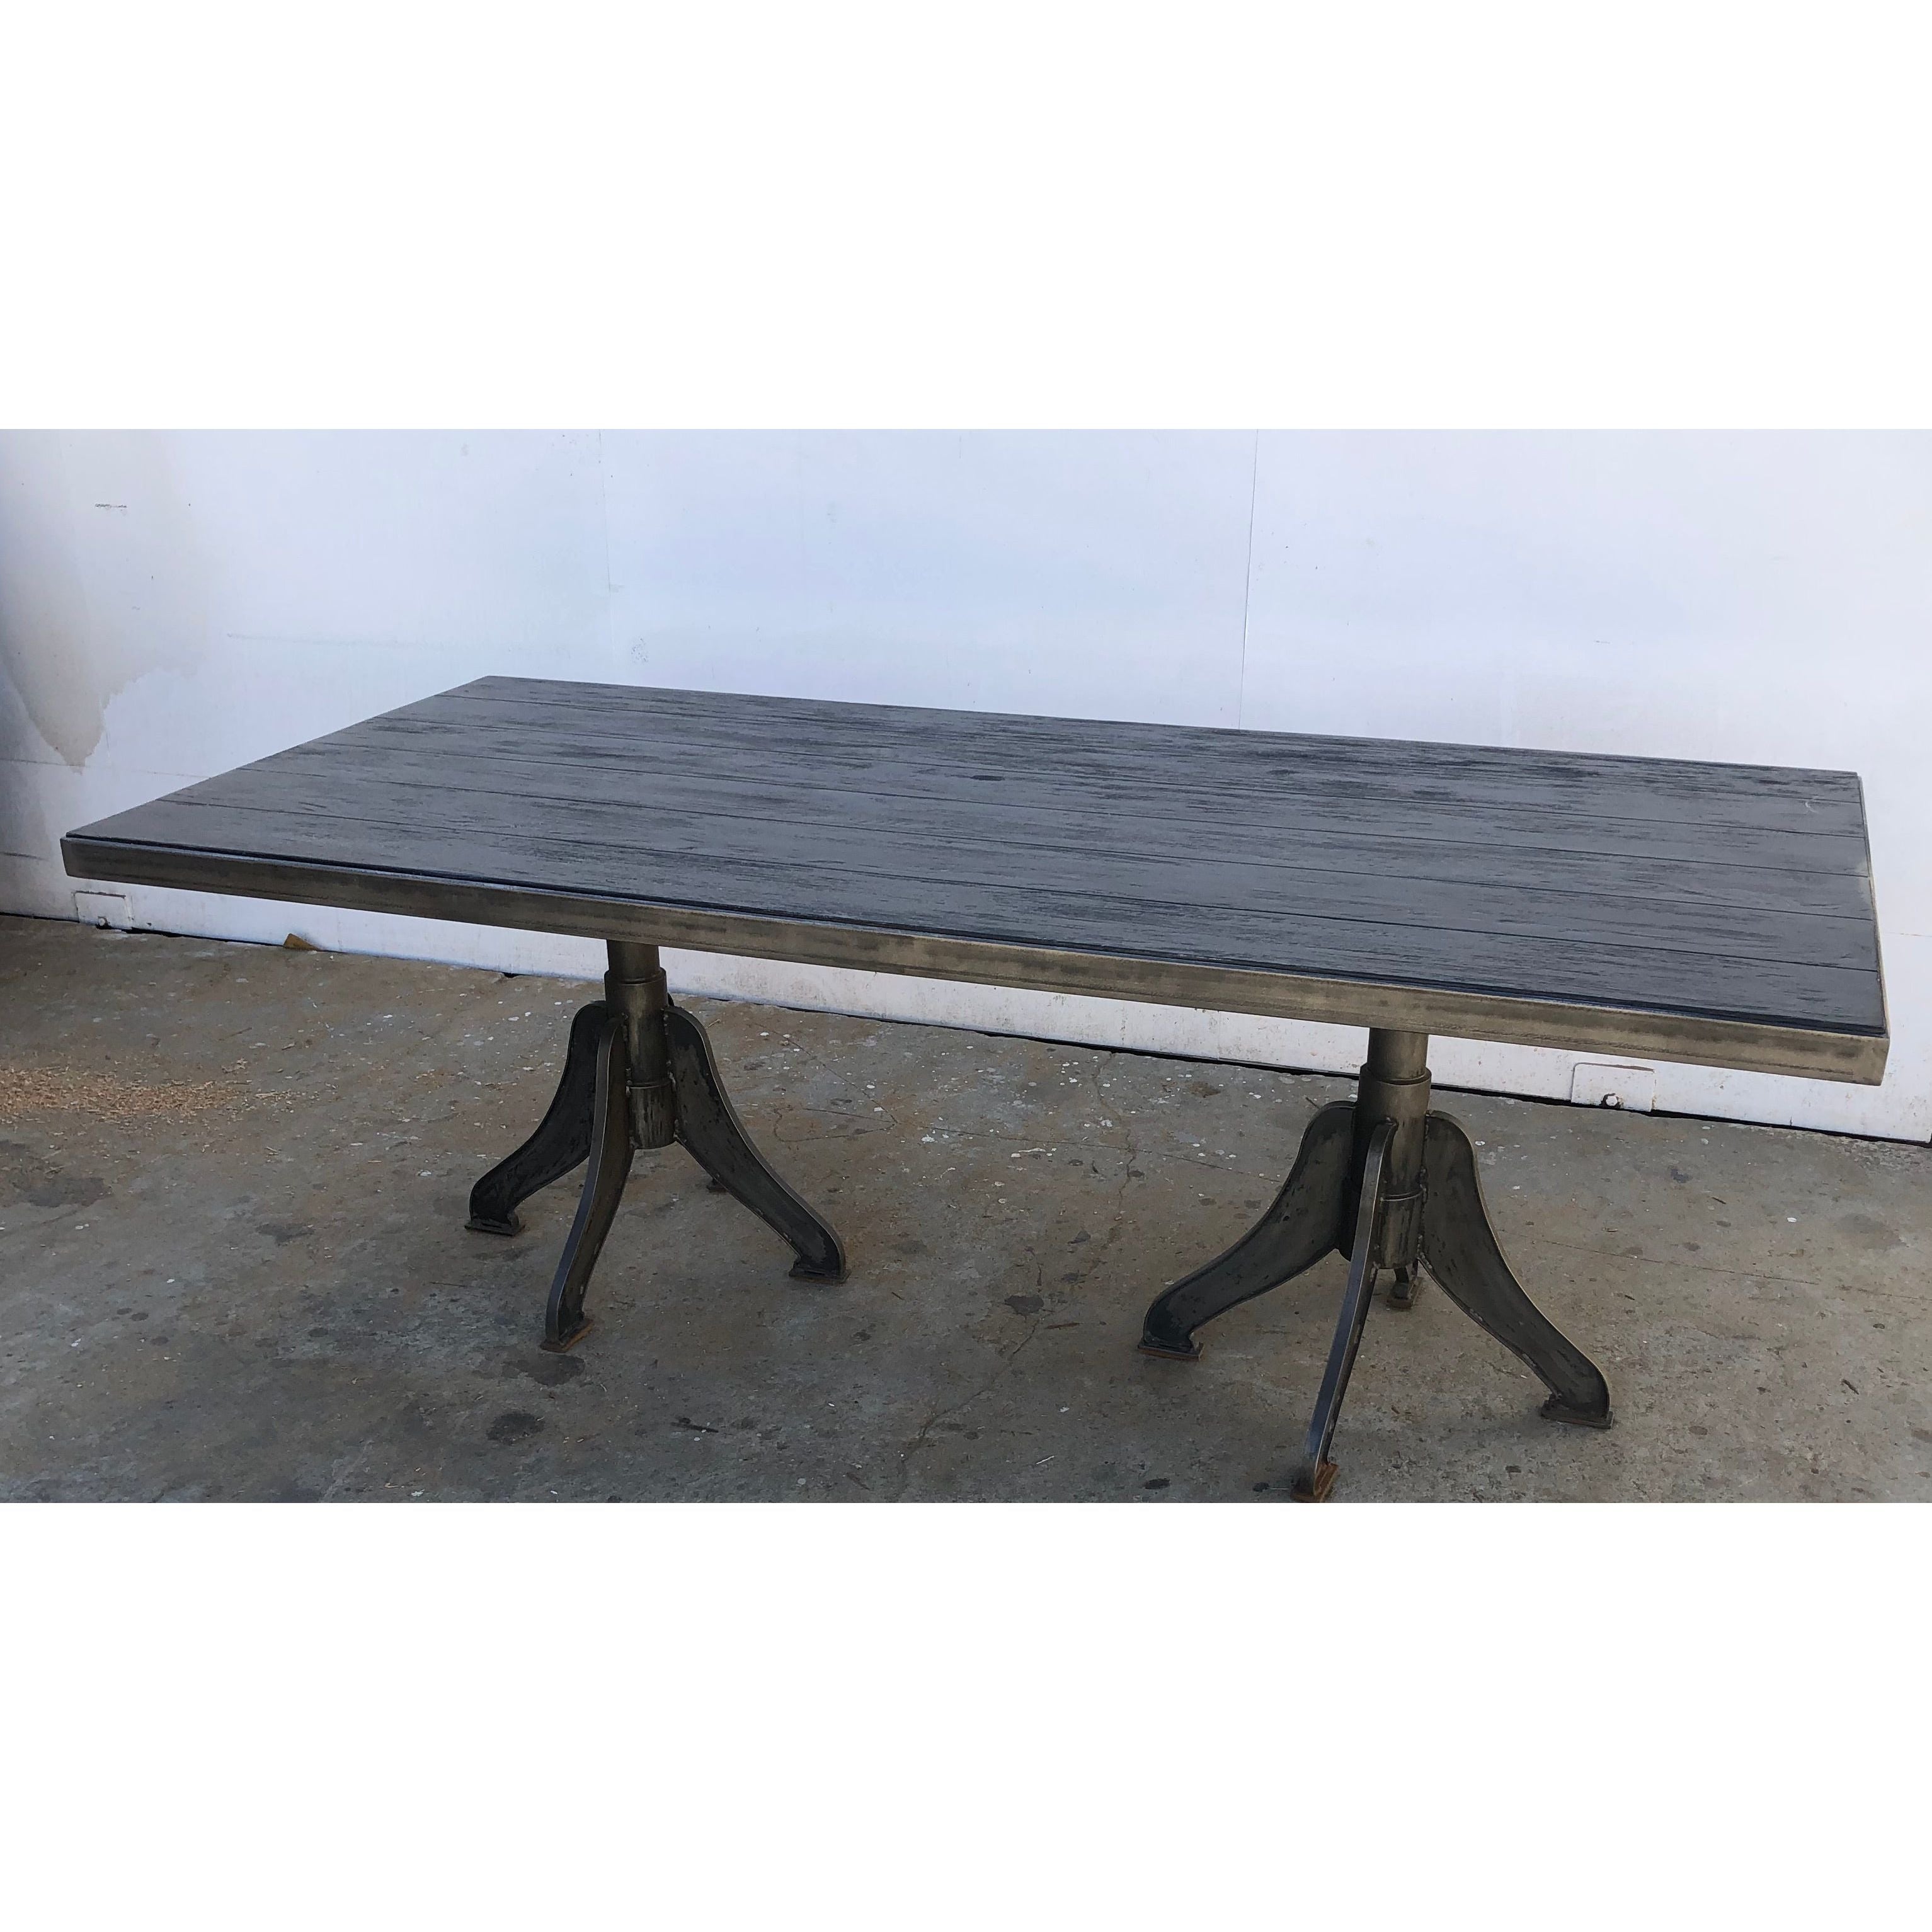 Custom Industrial Metal Furniture Designs Handmade In Los Angeles We Build Dining Room Tables